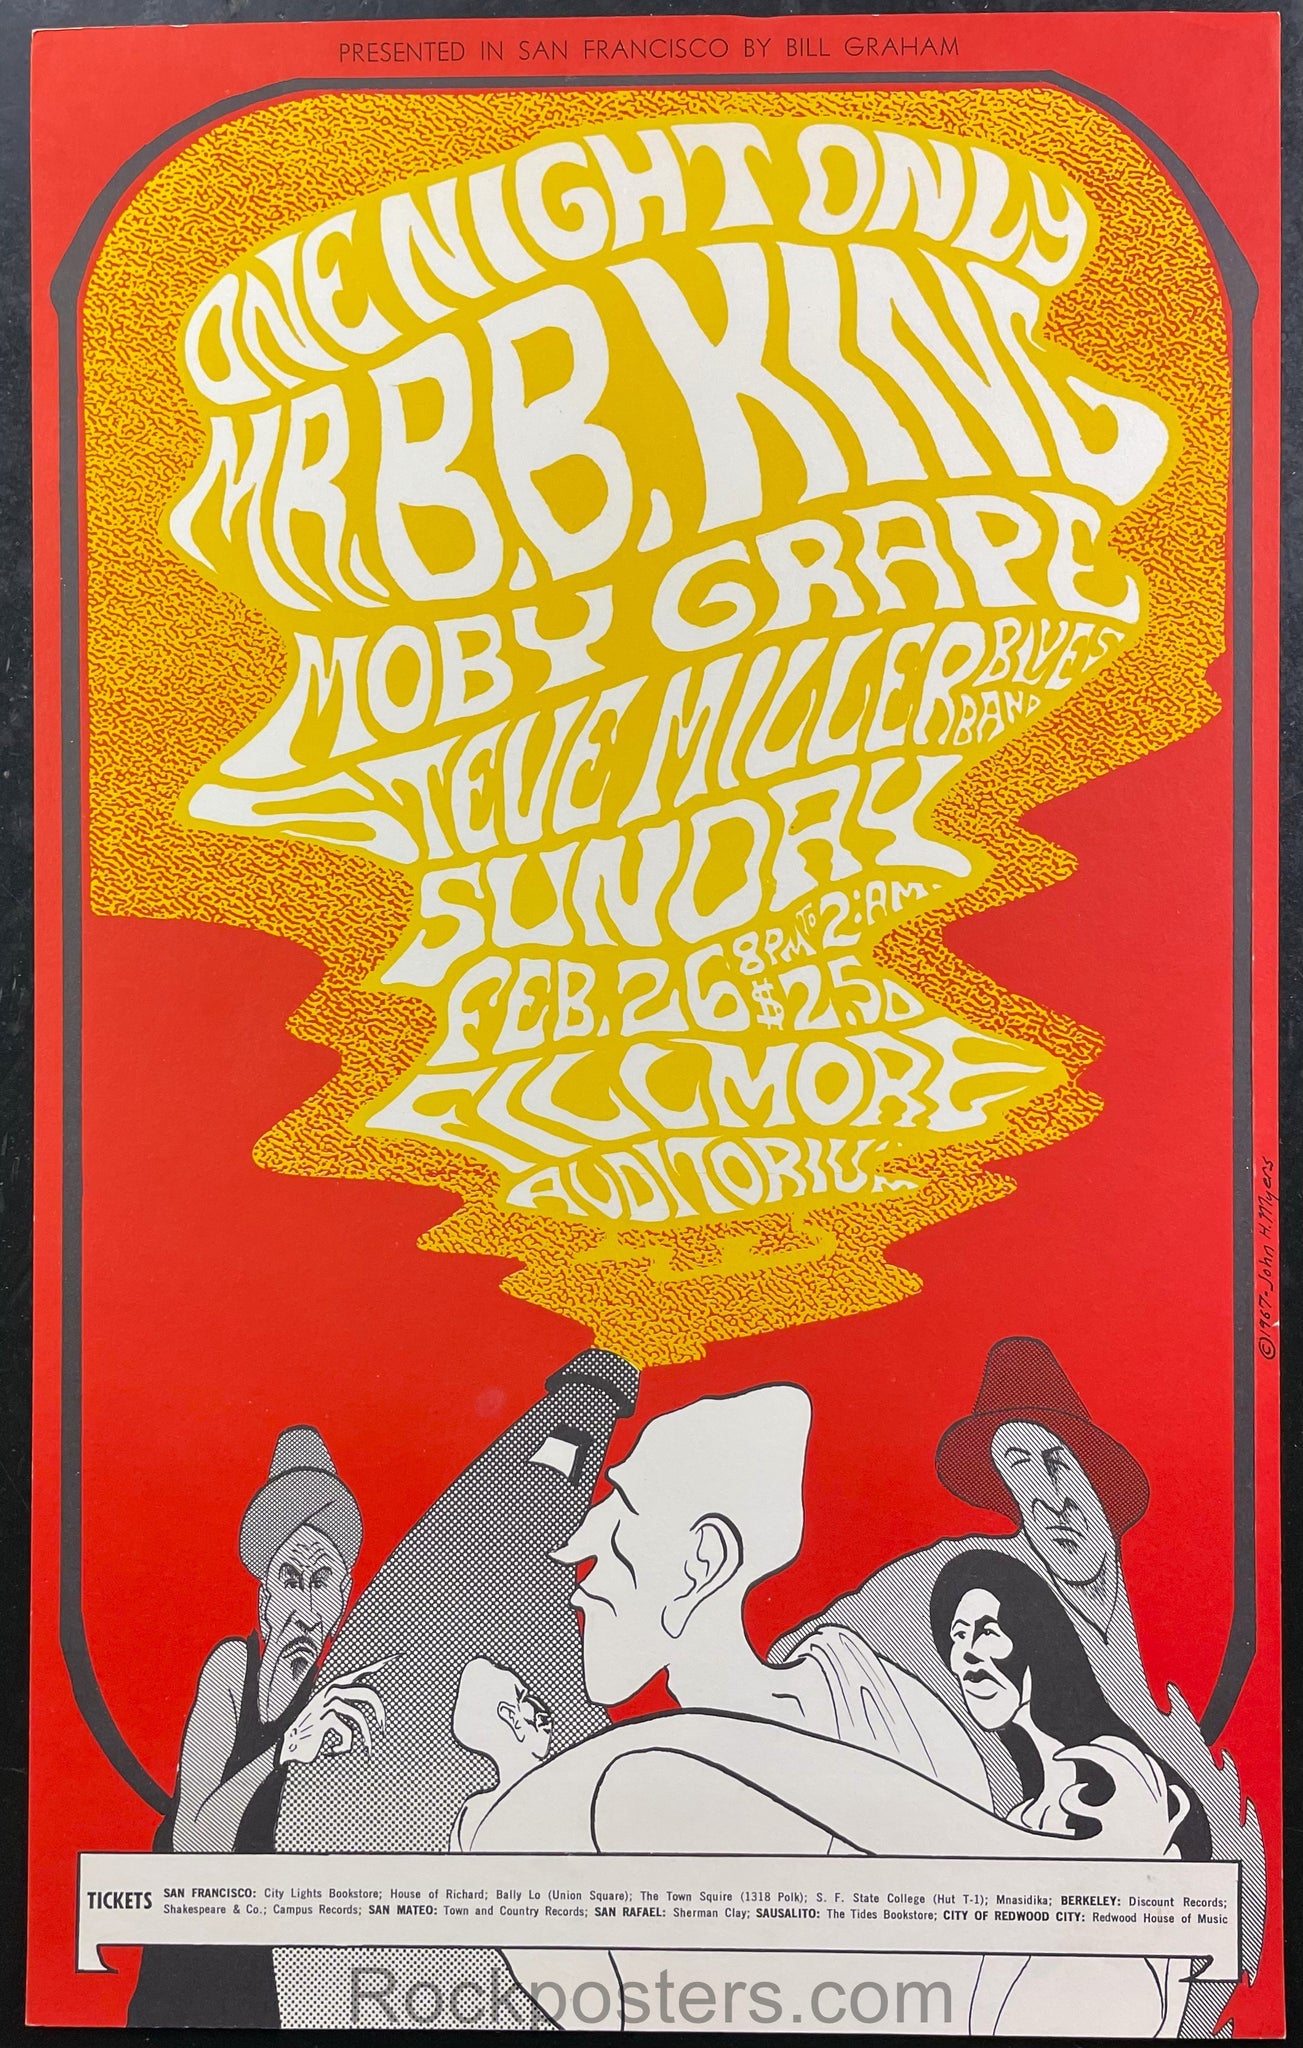 BG-52 - B.B. King - 1967 Poster - Fillmore Auditorium - Near Mint